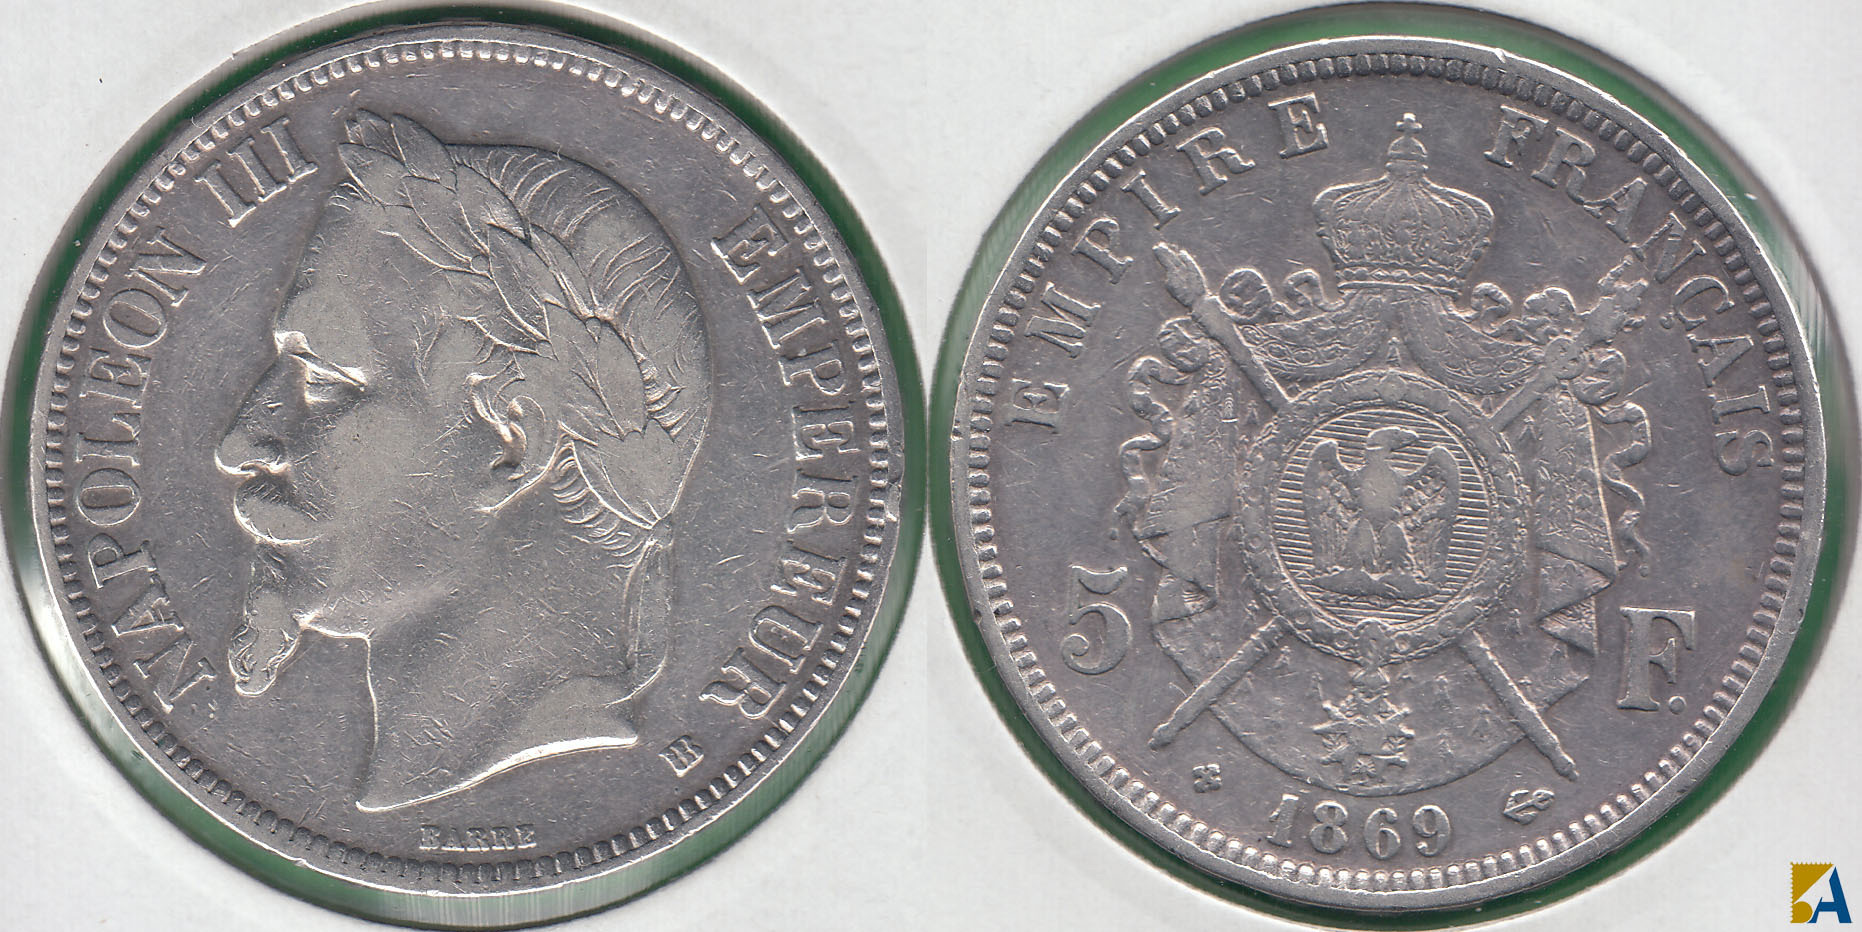 FRANCIA - FRANCE. 5 FRANCOS (FRANCS) DE 1869 BB. PLATA 0.900.